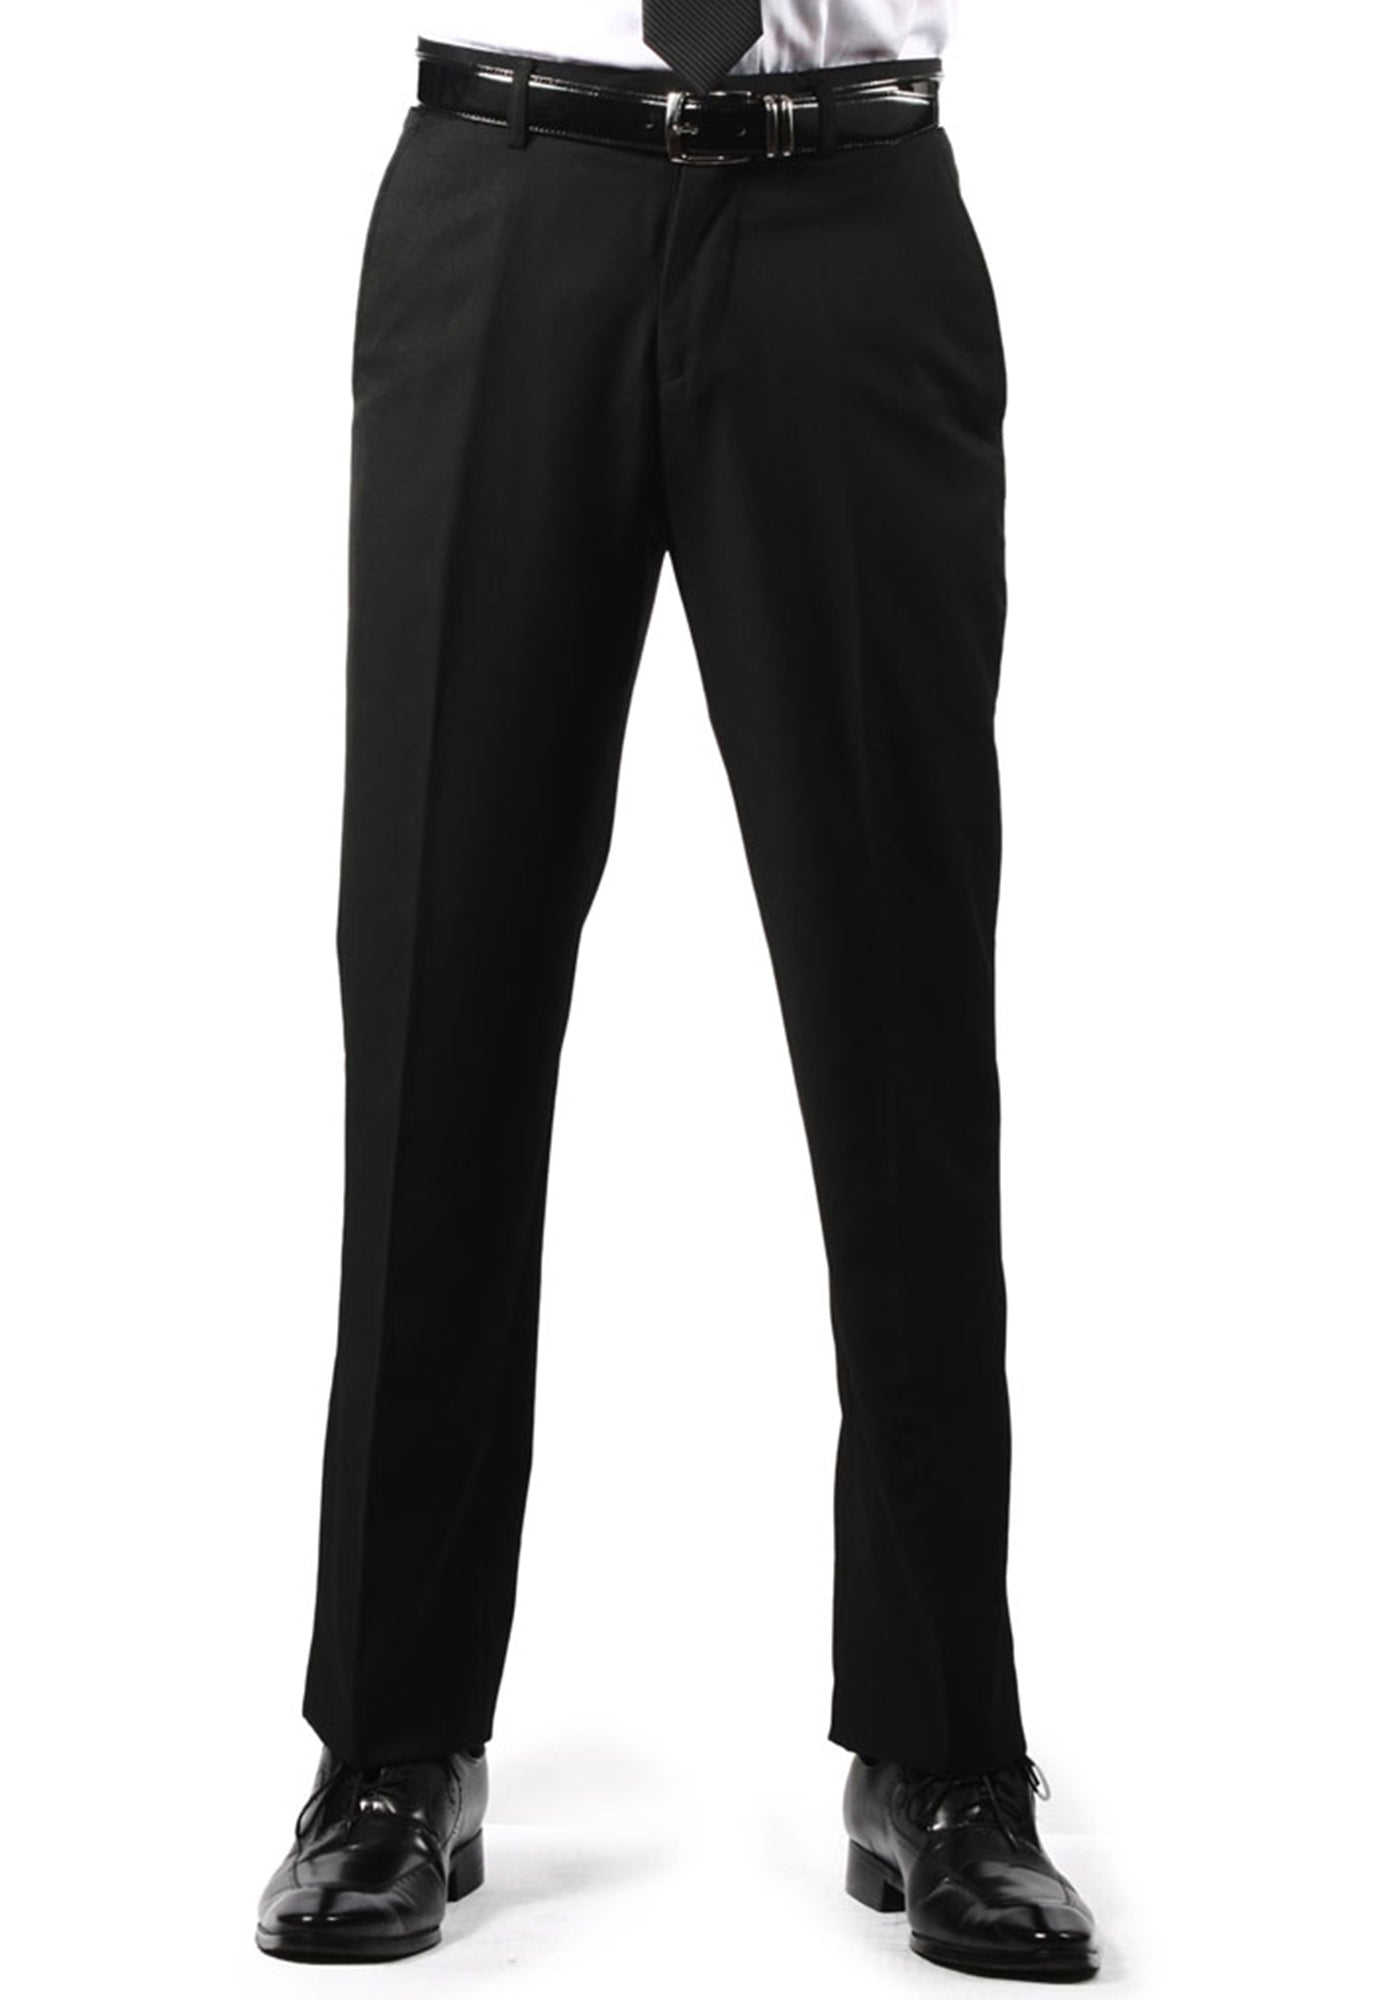 ABS Slim Fit Black Formal Trouser for Men  Polyester Viscose Bottom Formal  Pants for Gents  Work